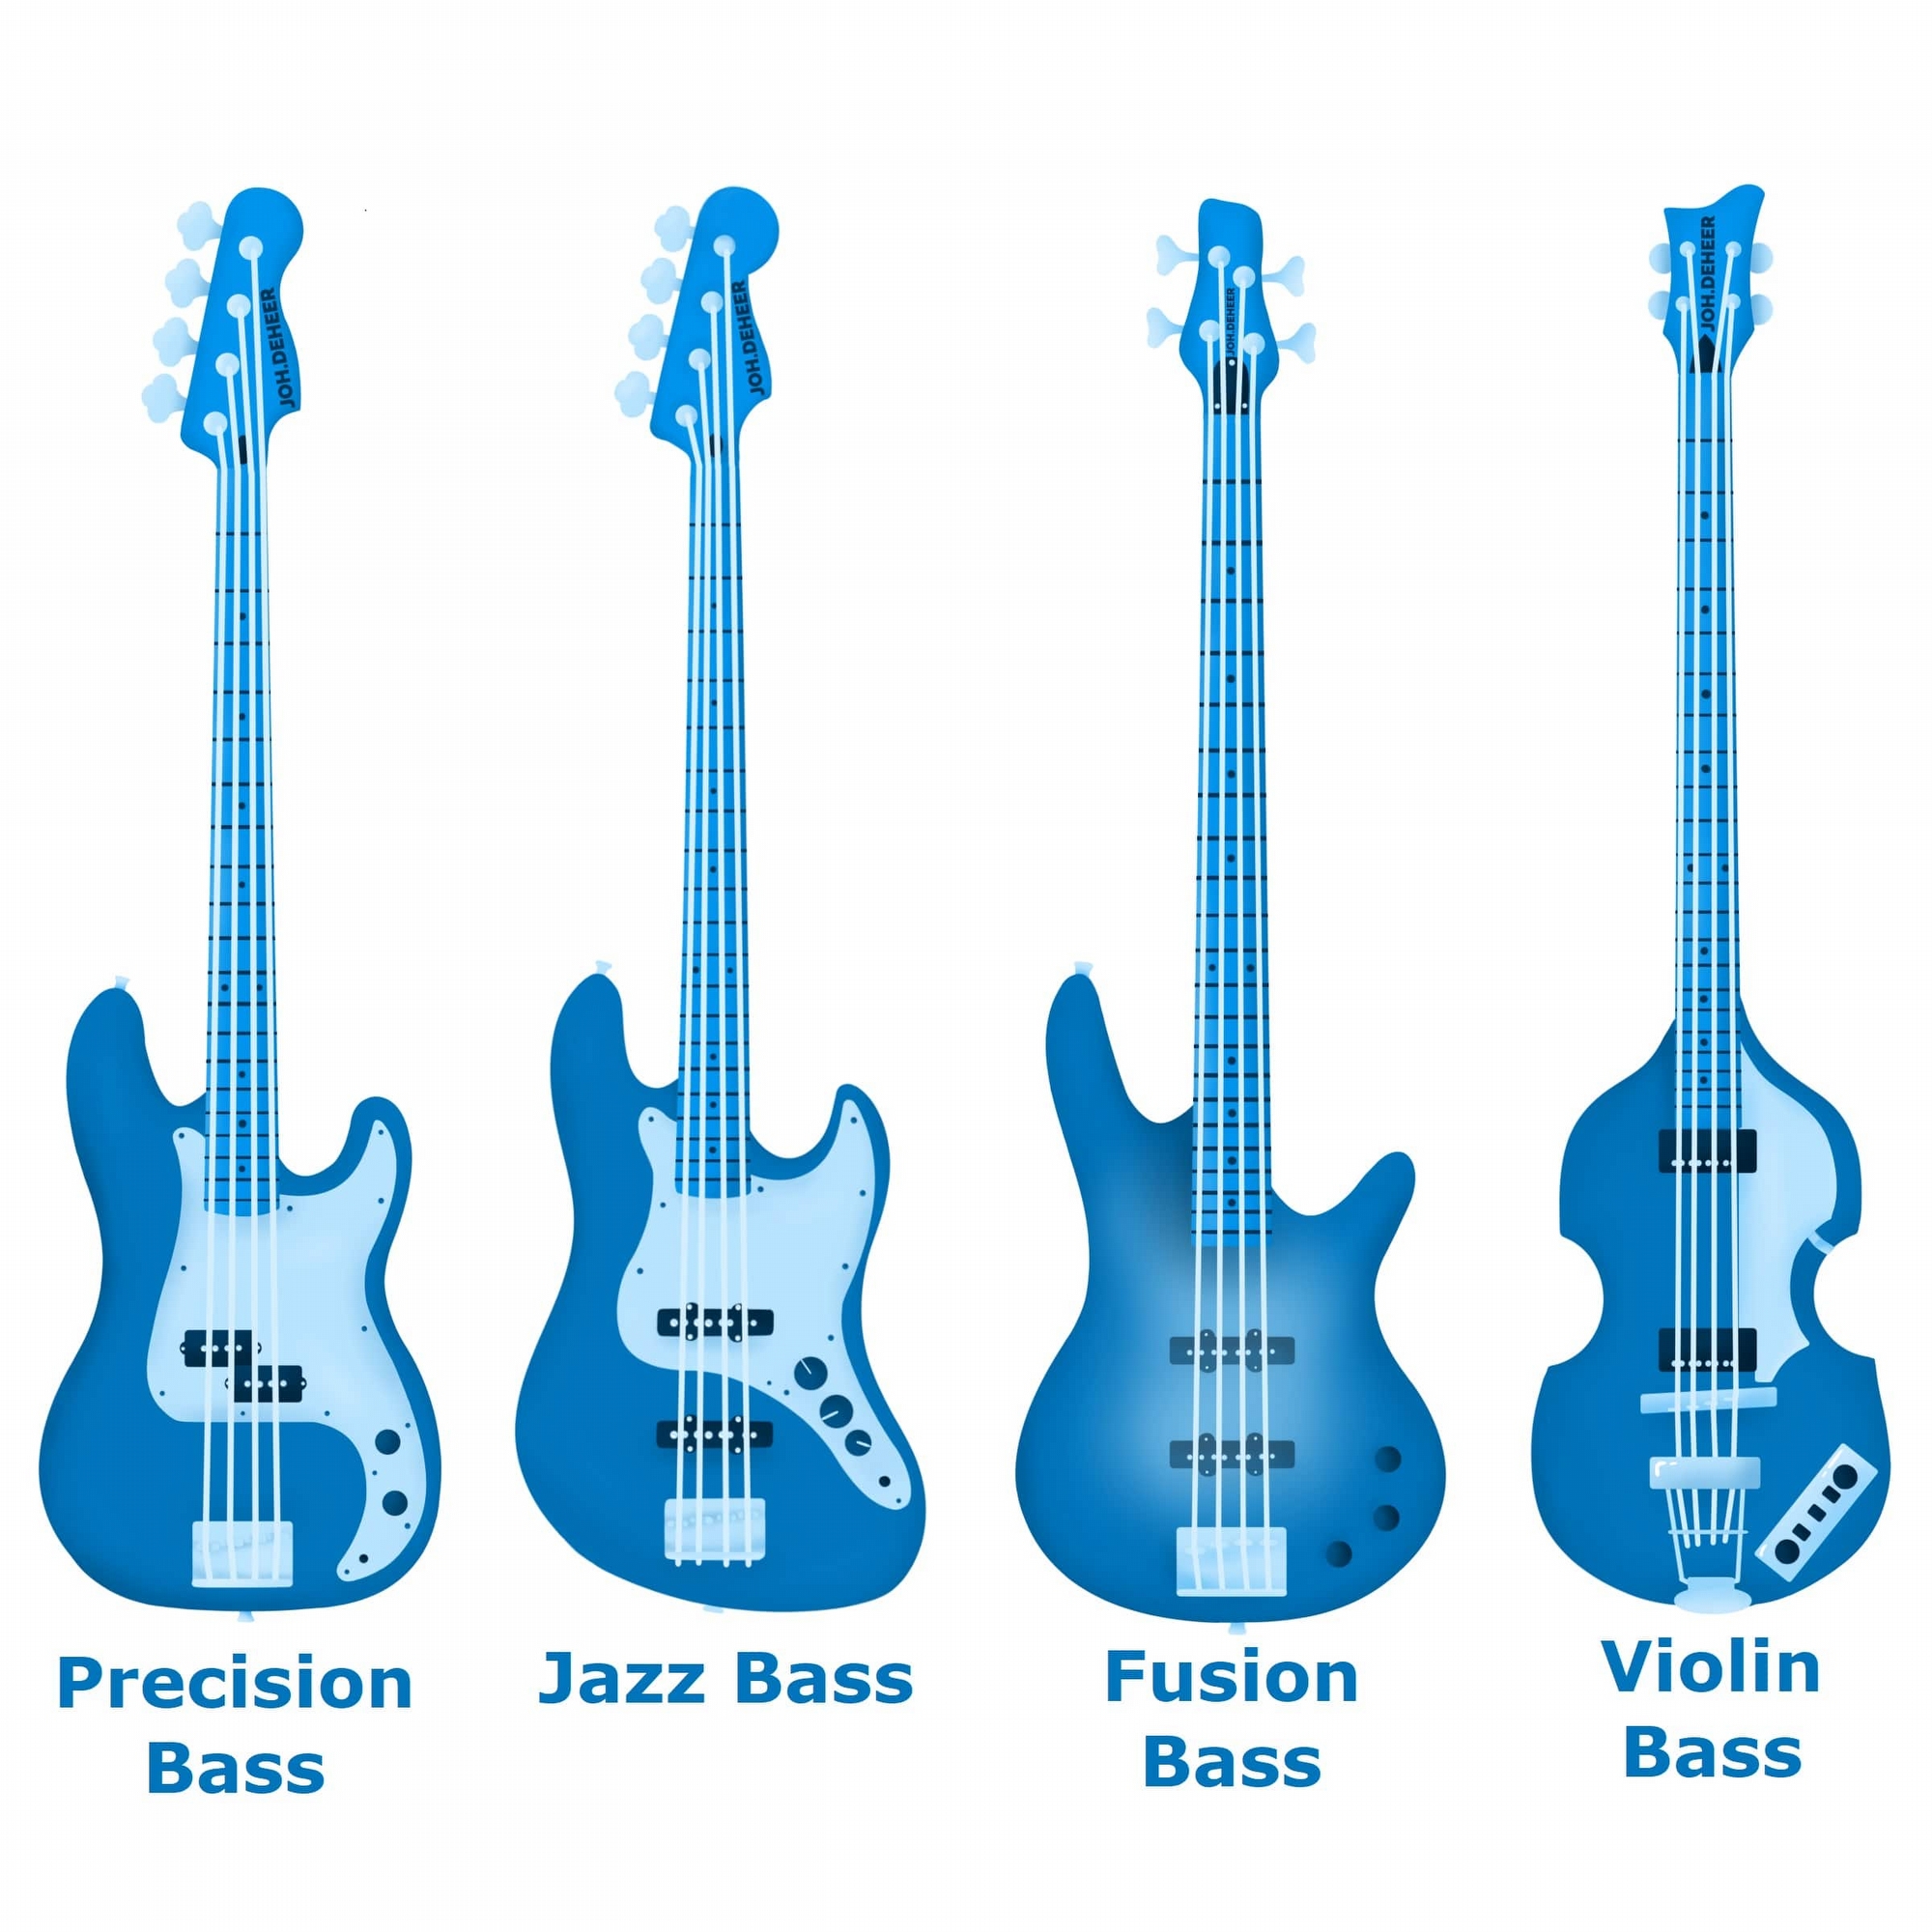 Bass Guitar Parts - bassoorten-min